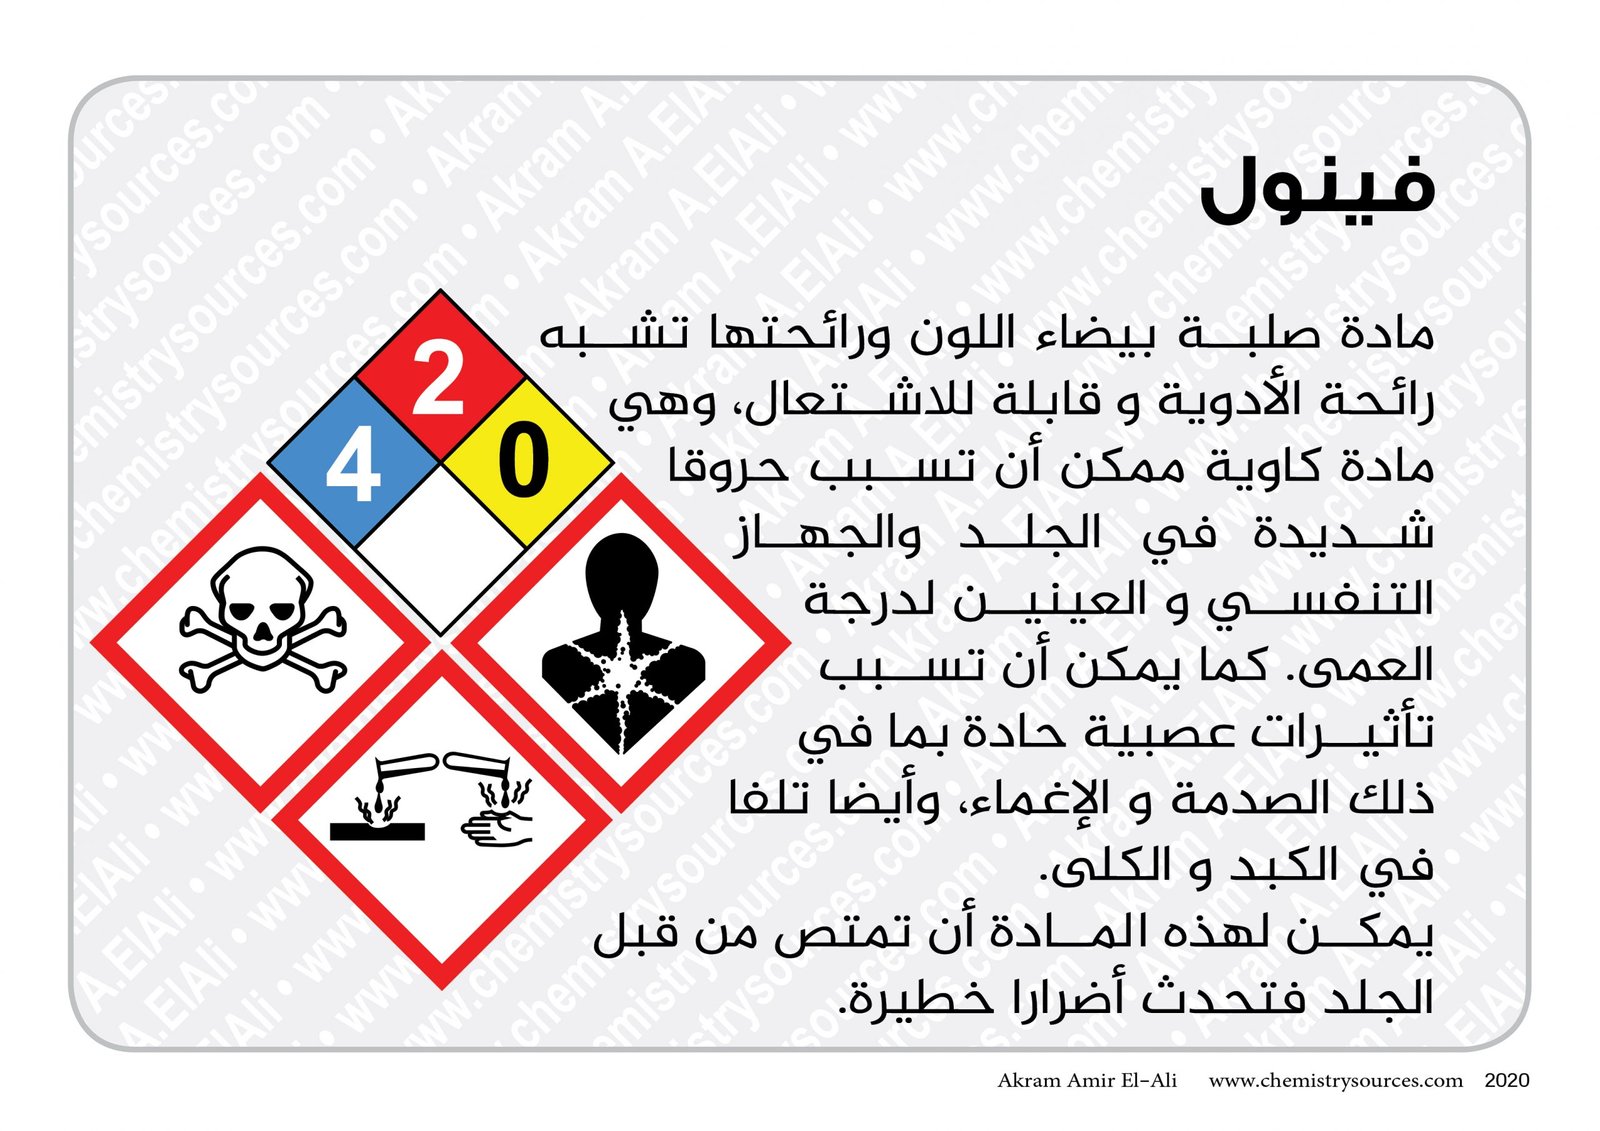 بطاقات اخطار المواد الكيميائية المختصرة26 scaled